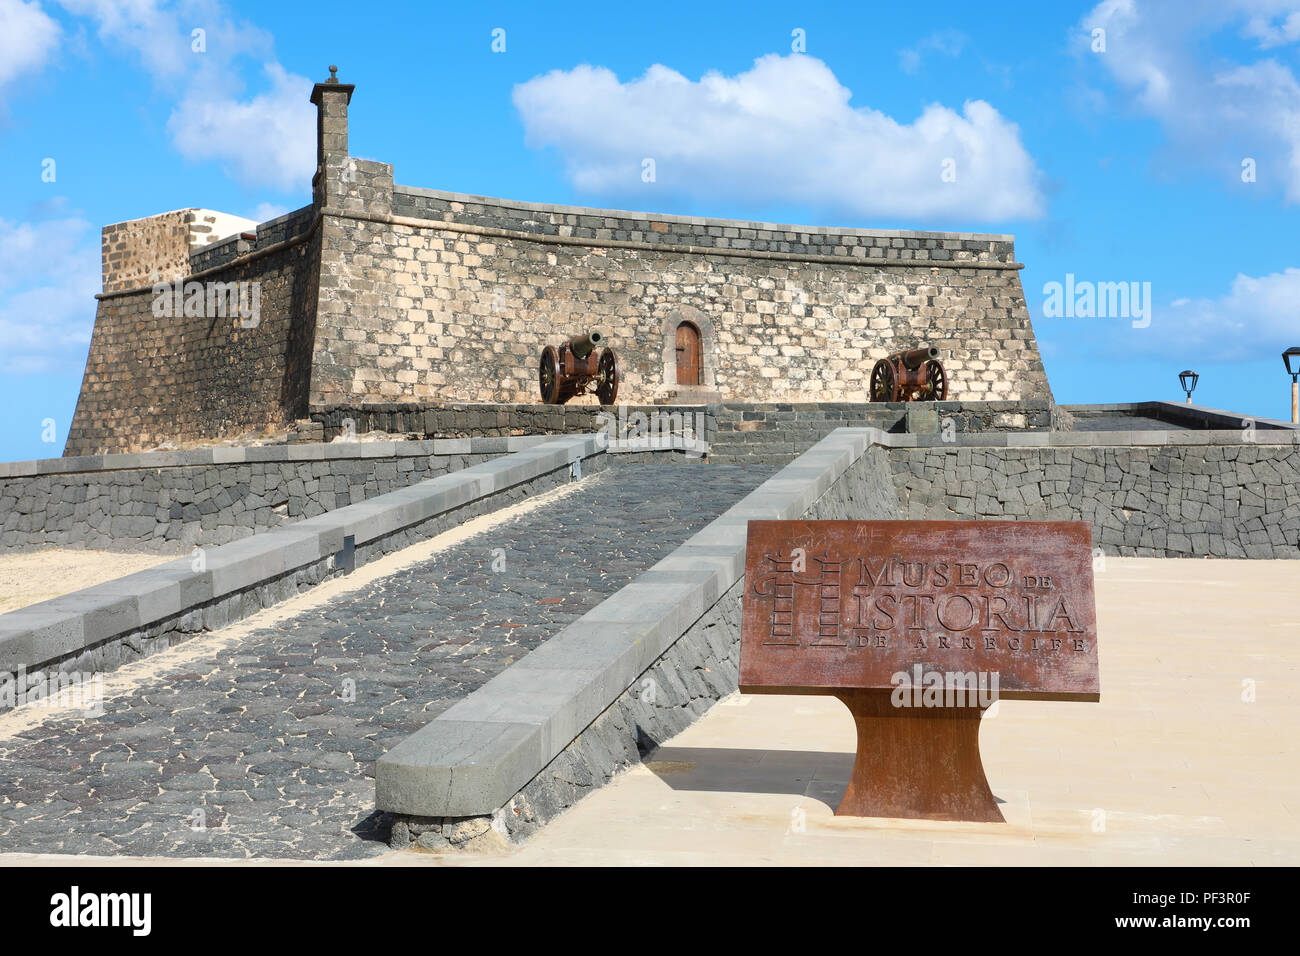 LANZAROTE, SPAIN - APRIL 20, 2018: Castle of Saint Gabriel with Museo de Historia de Arrecife, Lanzarote, Spain Stock Photo